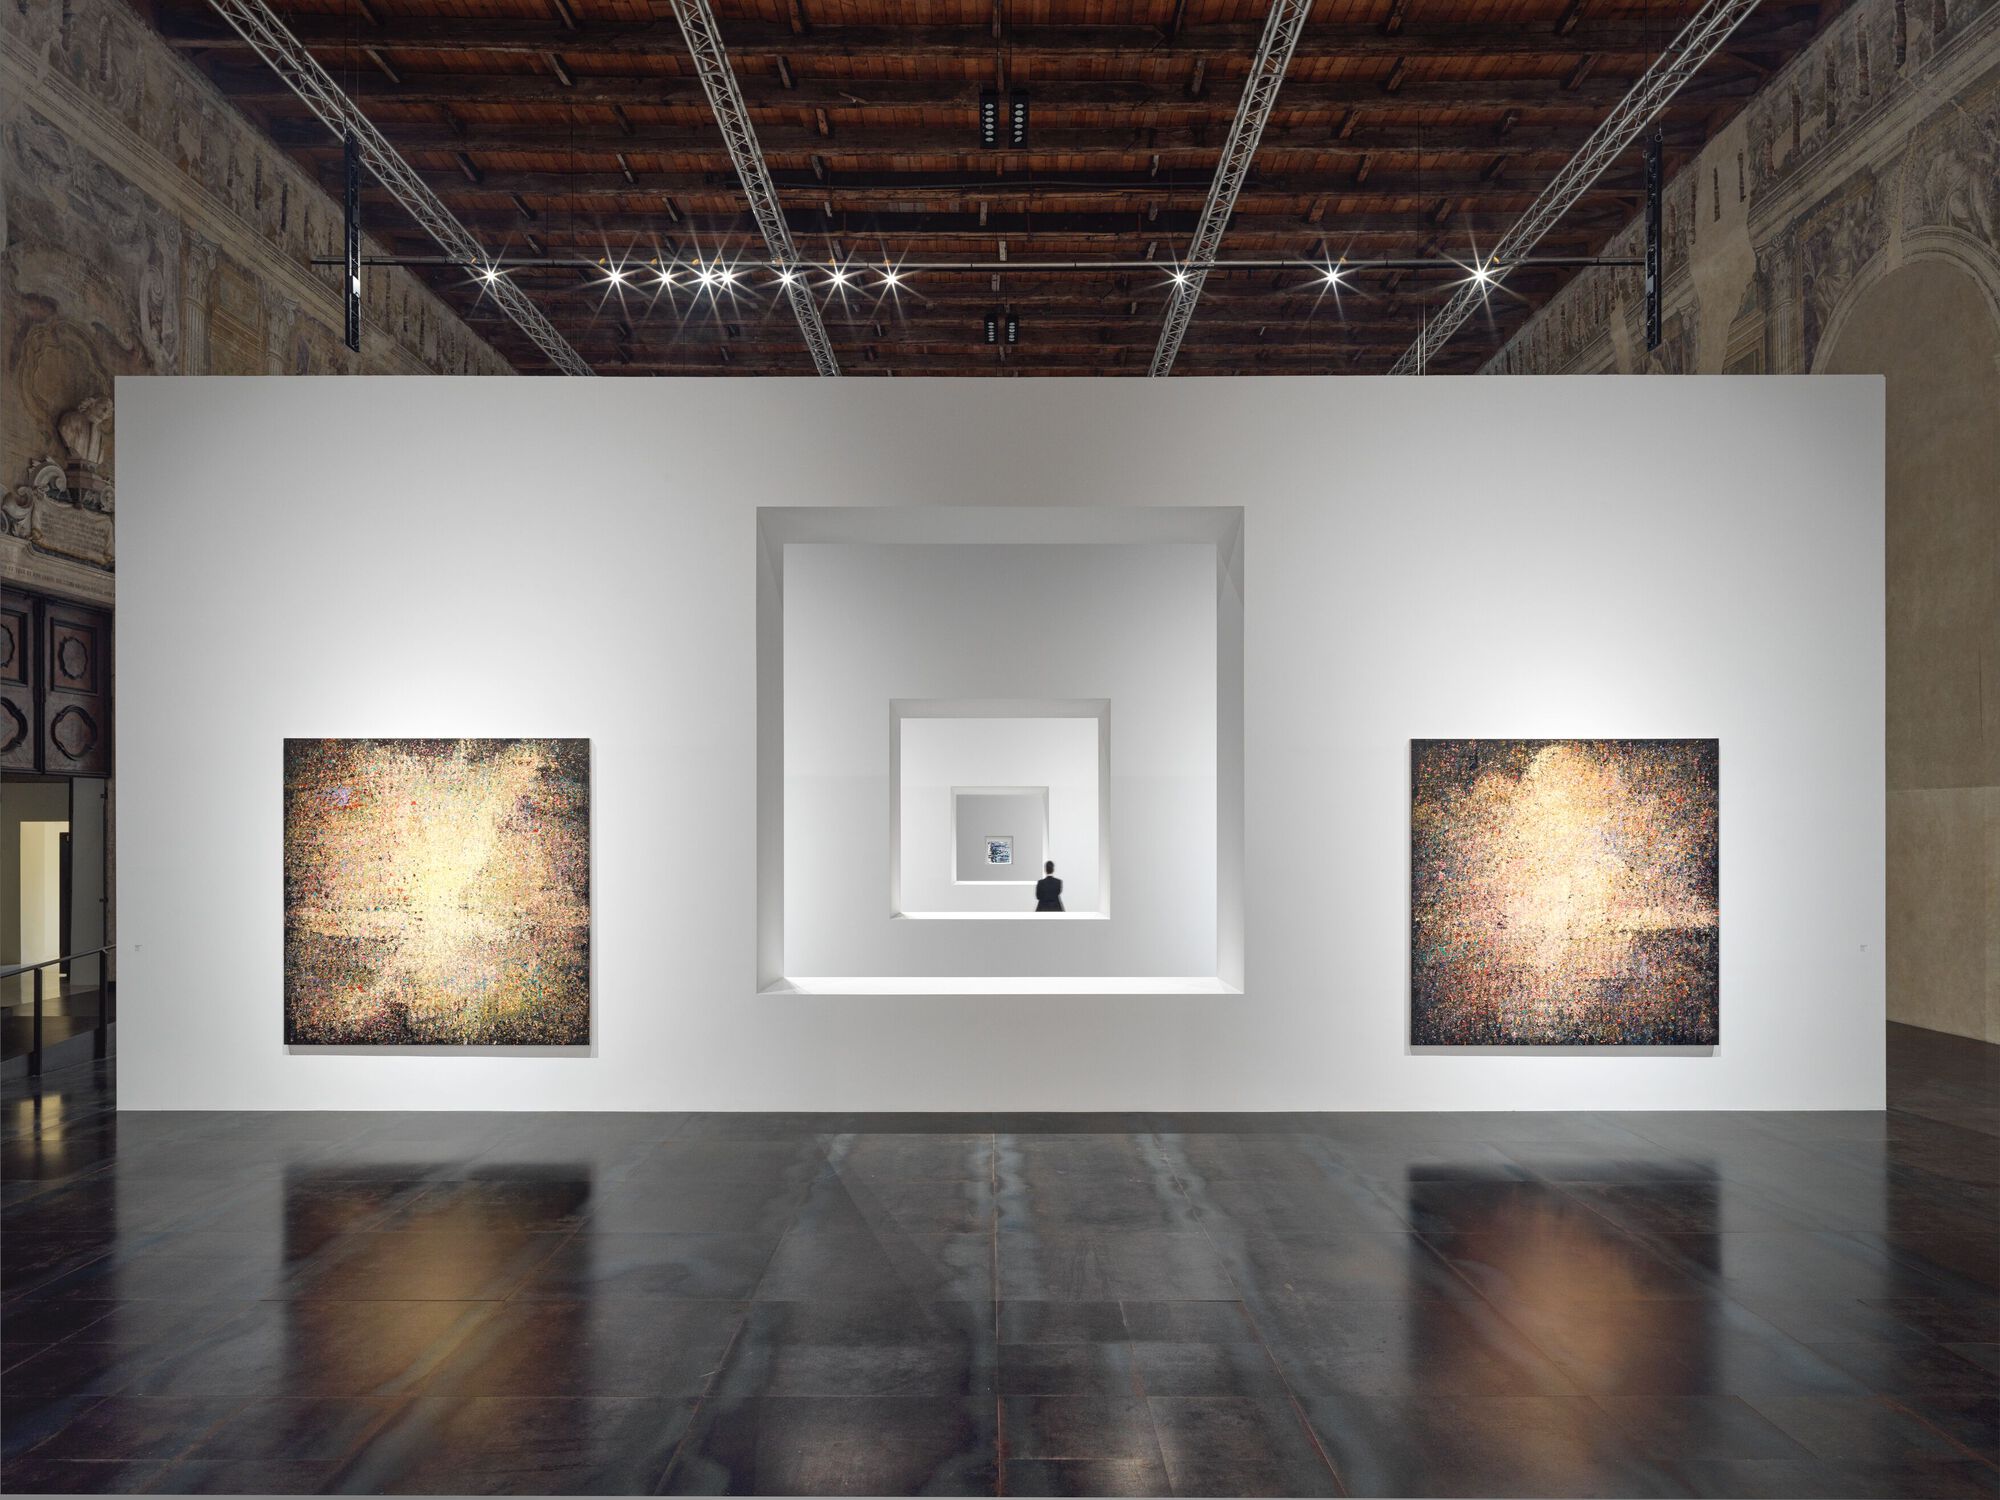 Тадао Андо превращает историческую Большую школу в Венеции в выставку, посвященную художнику Цзэн Фаньчжи